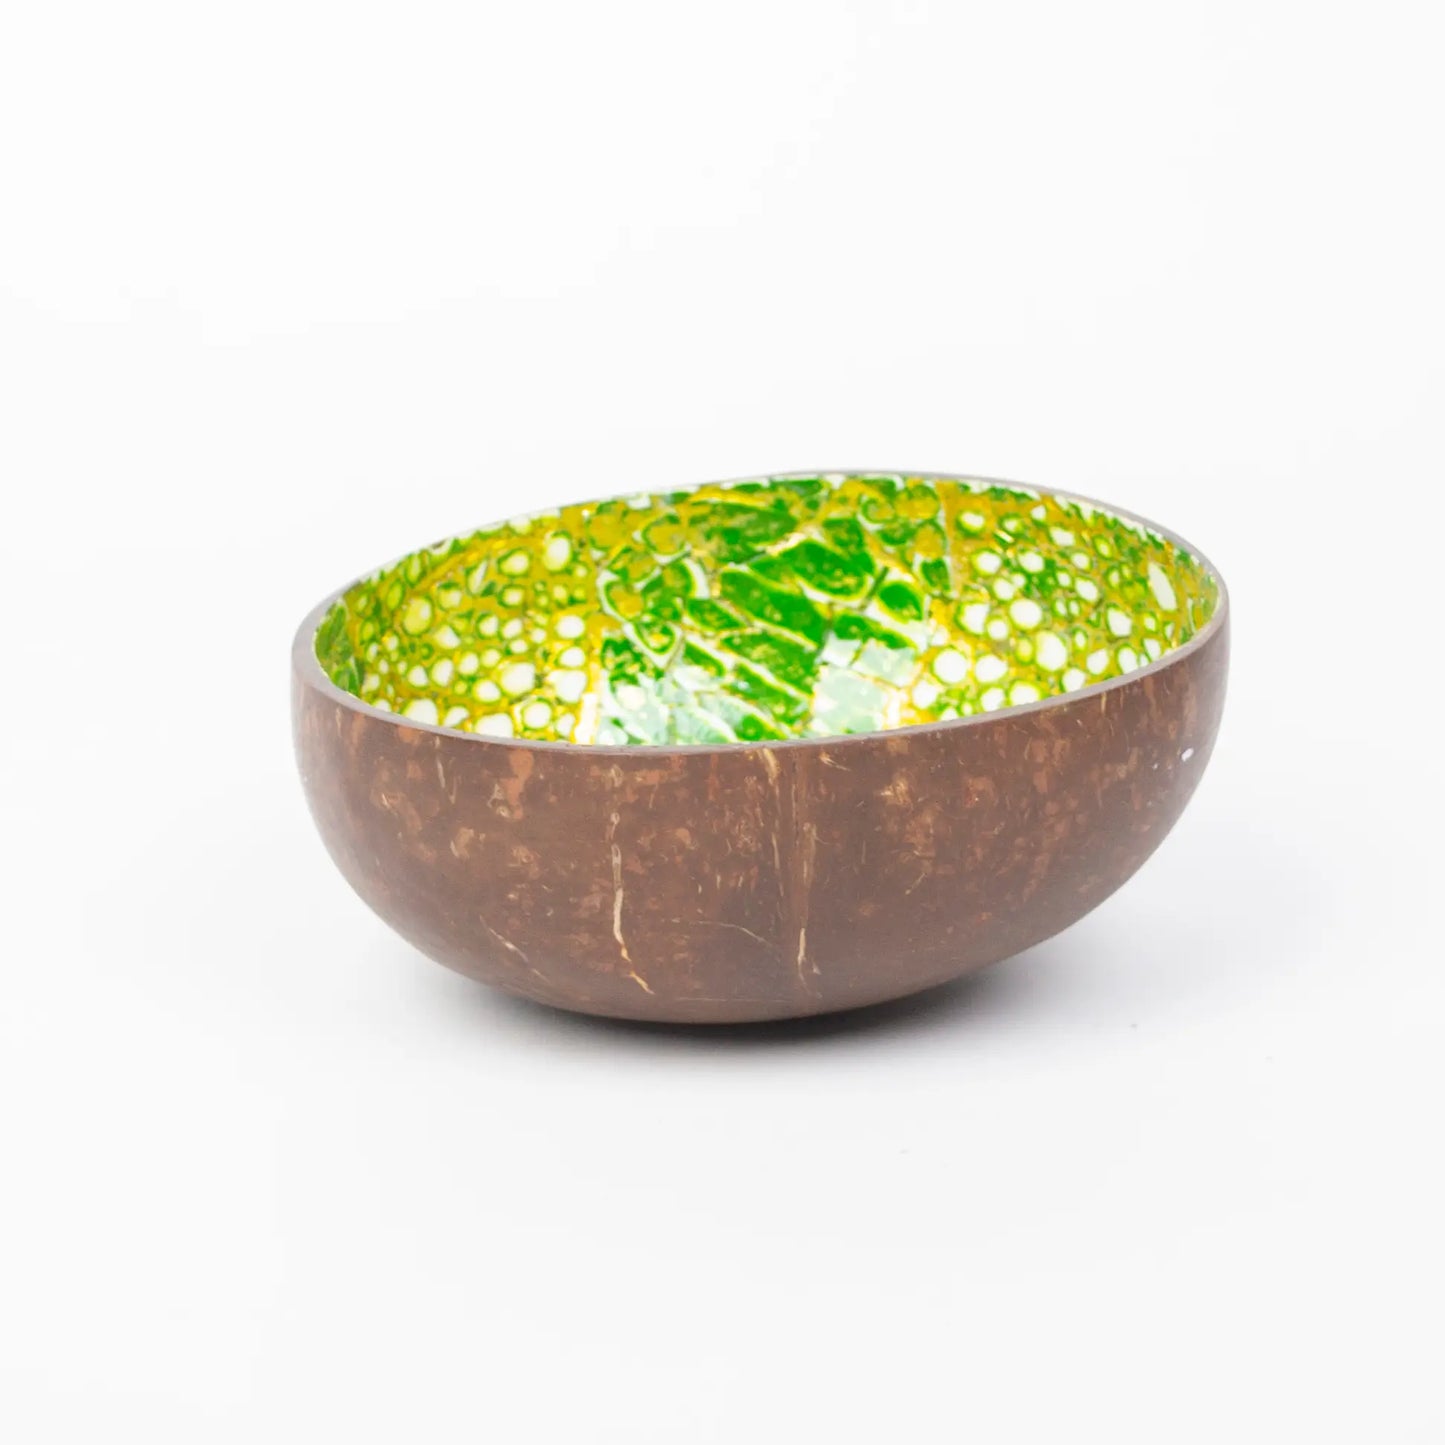 Makapli Kokosnootkom 12cm groen goud eierschaal